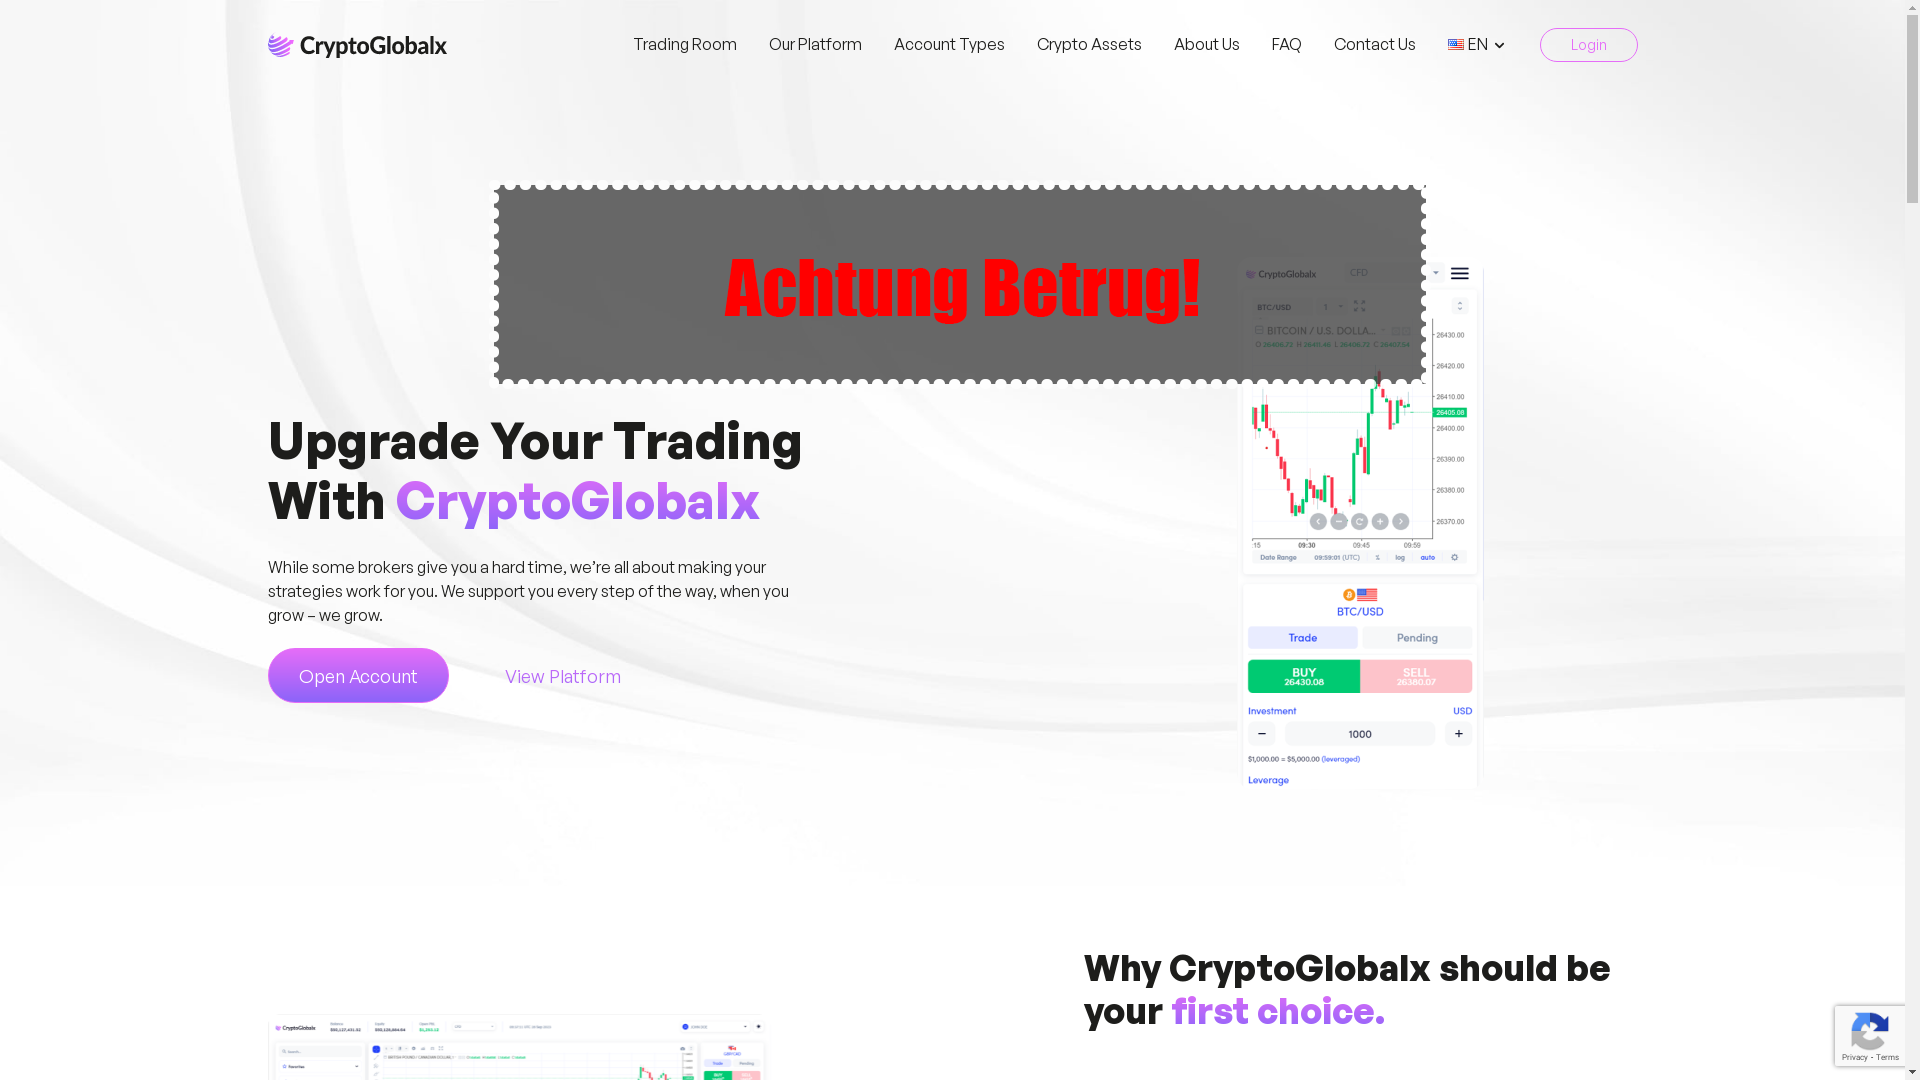 cryptoglobalx.com